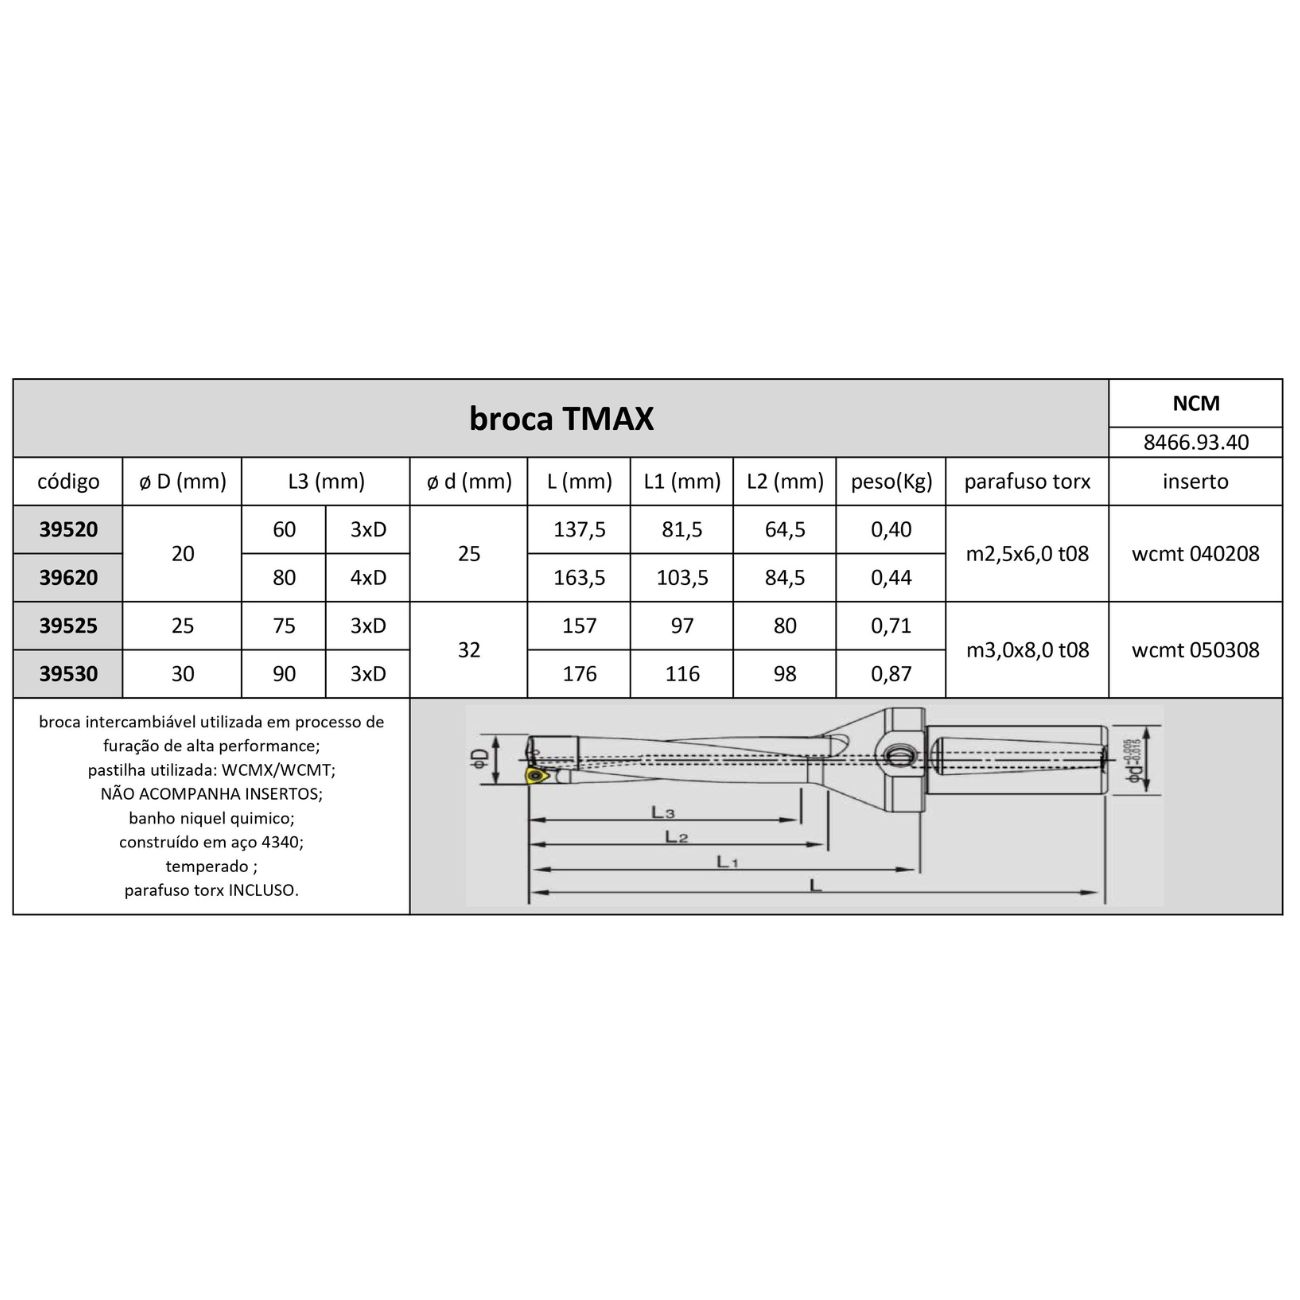 broca Tmax 30mm 3xd wcmt 050308